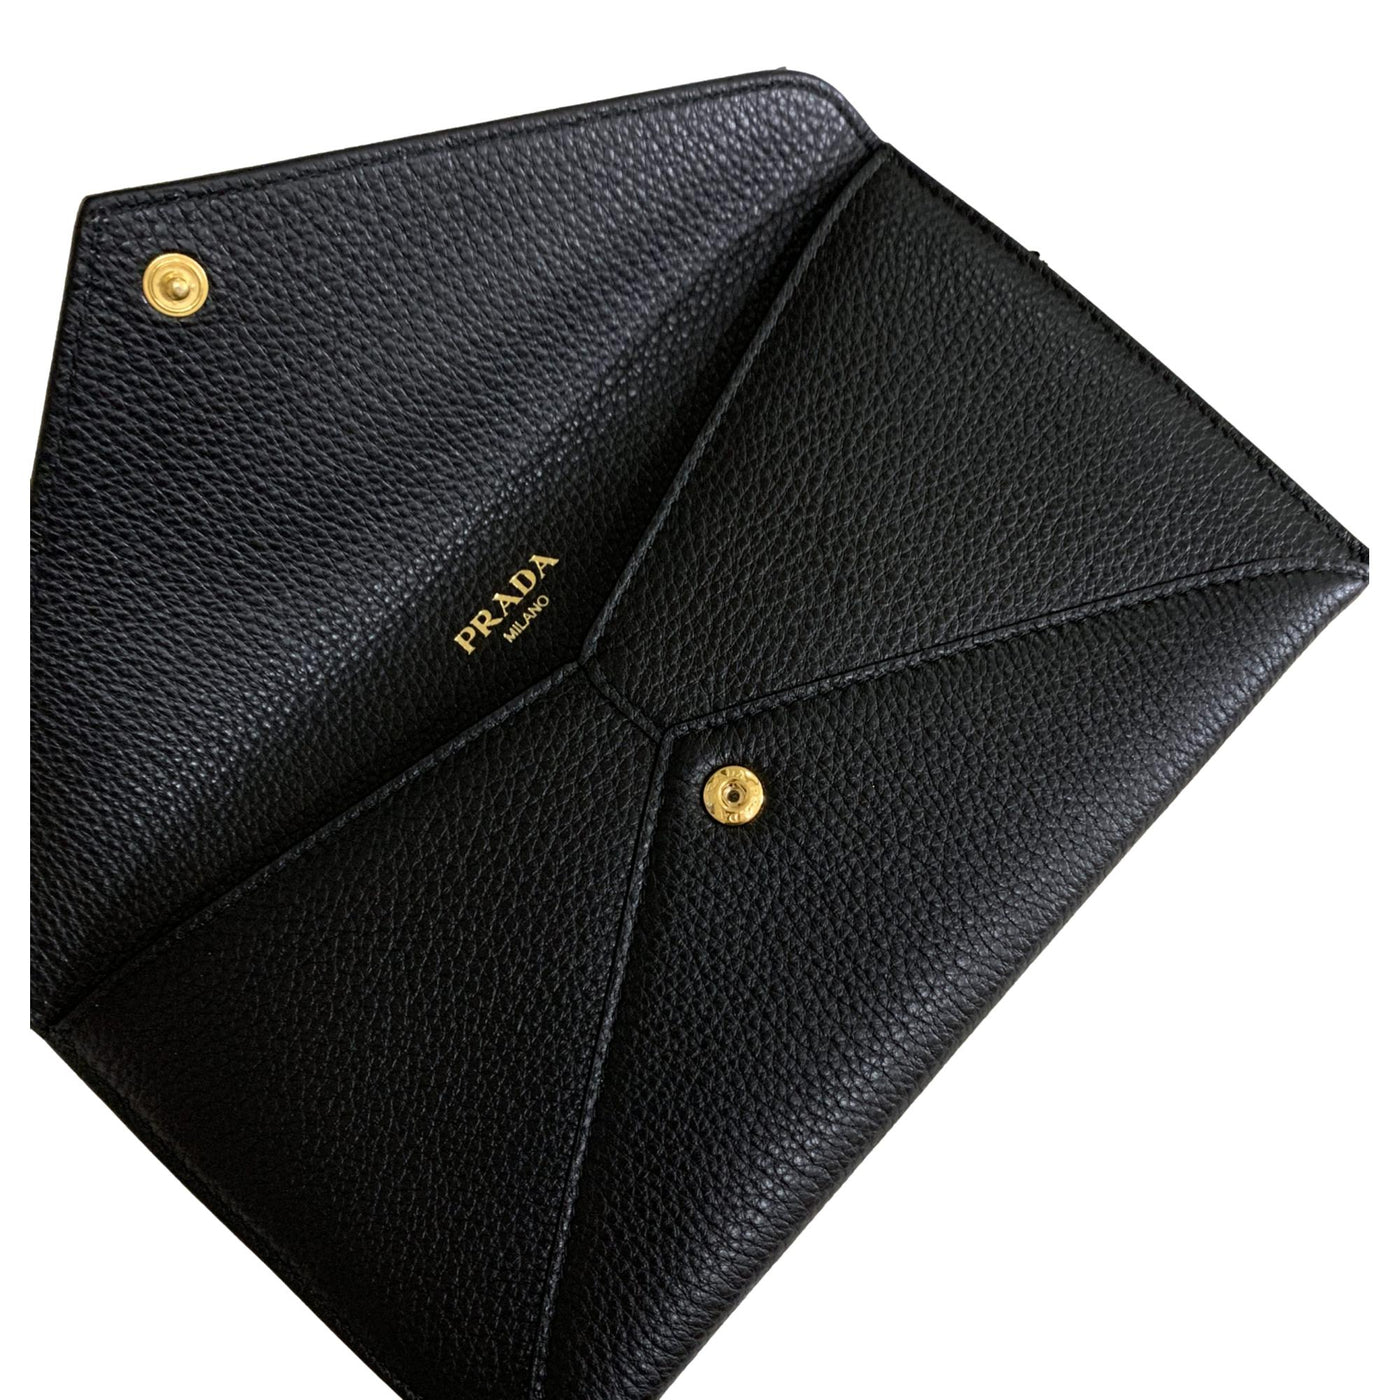 Prada Black Vitello Grain Leather Long Envelope Wallet 1MF175 - LUXURYMRKT